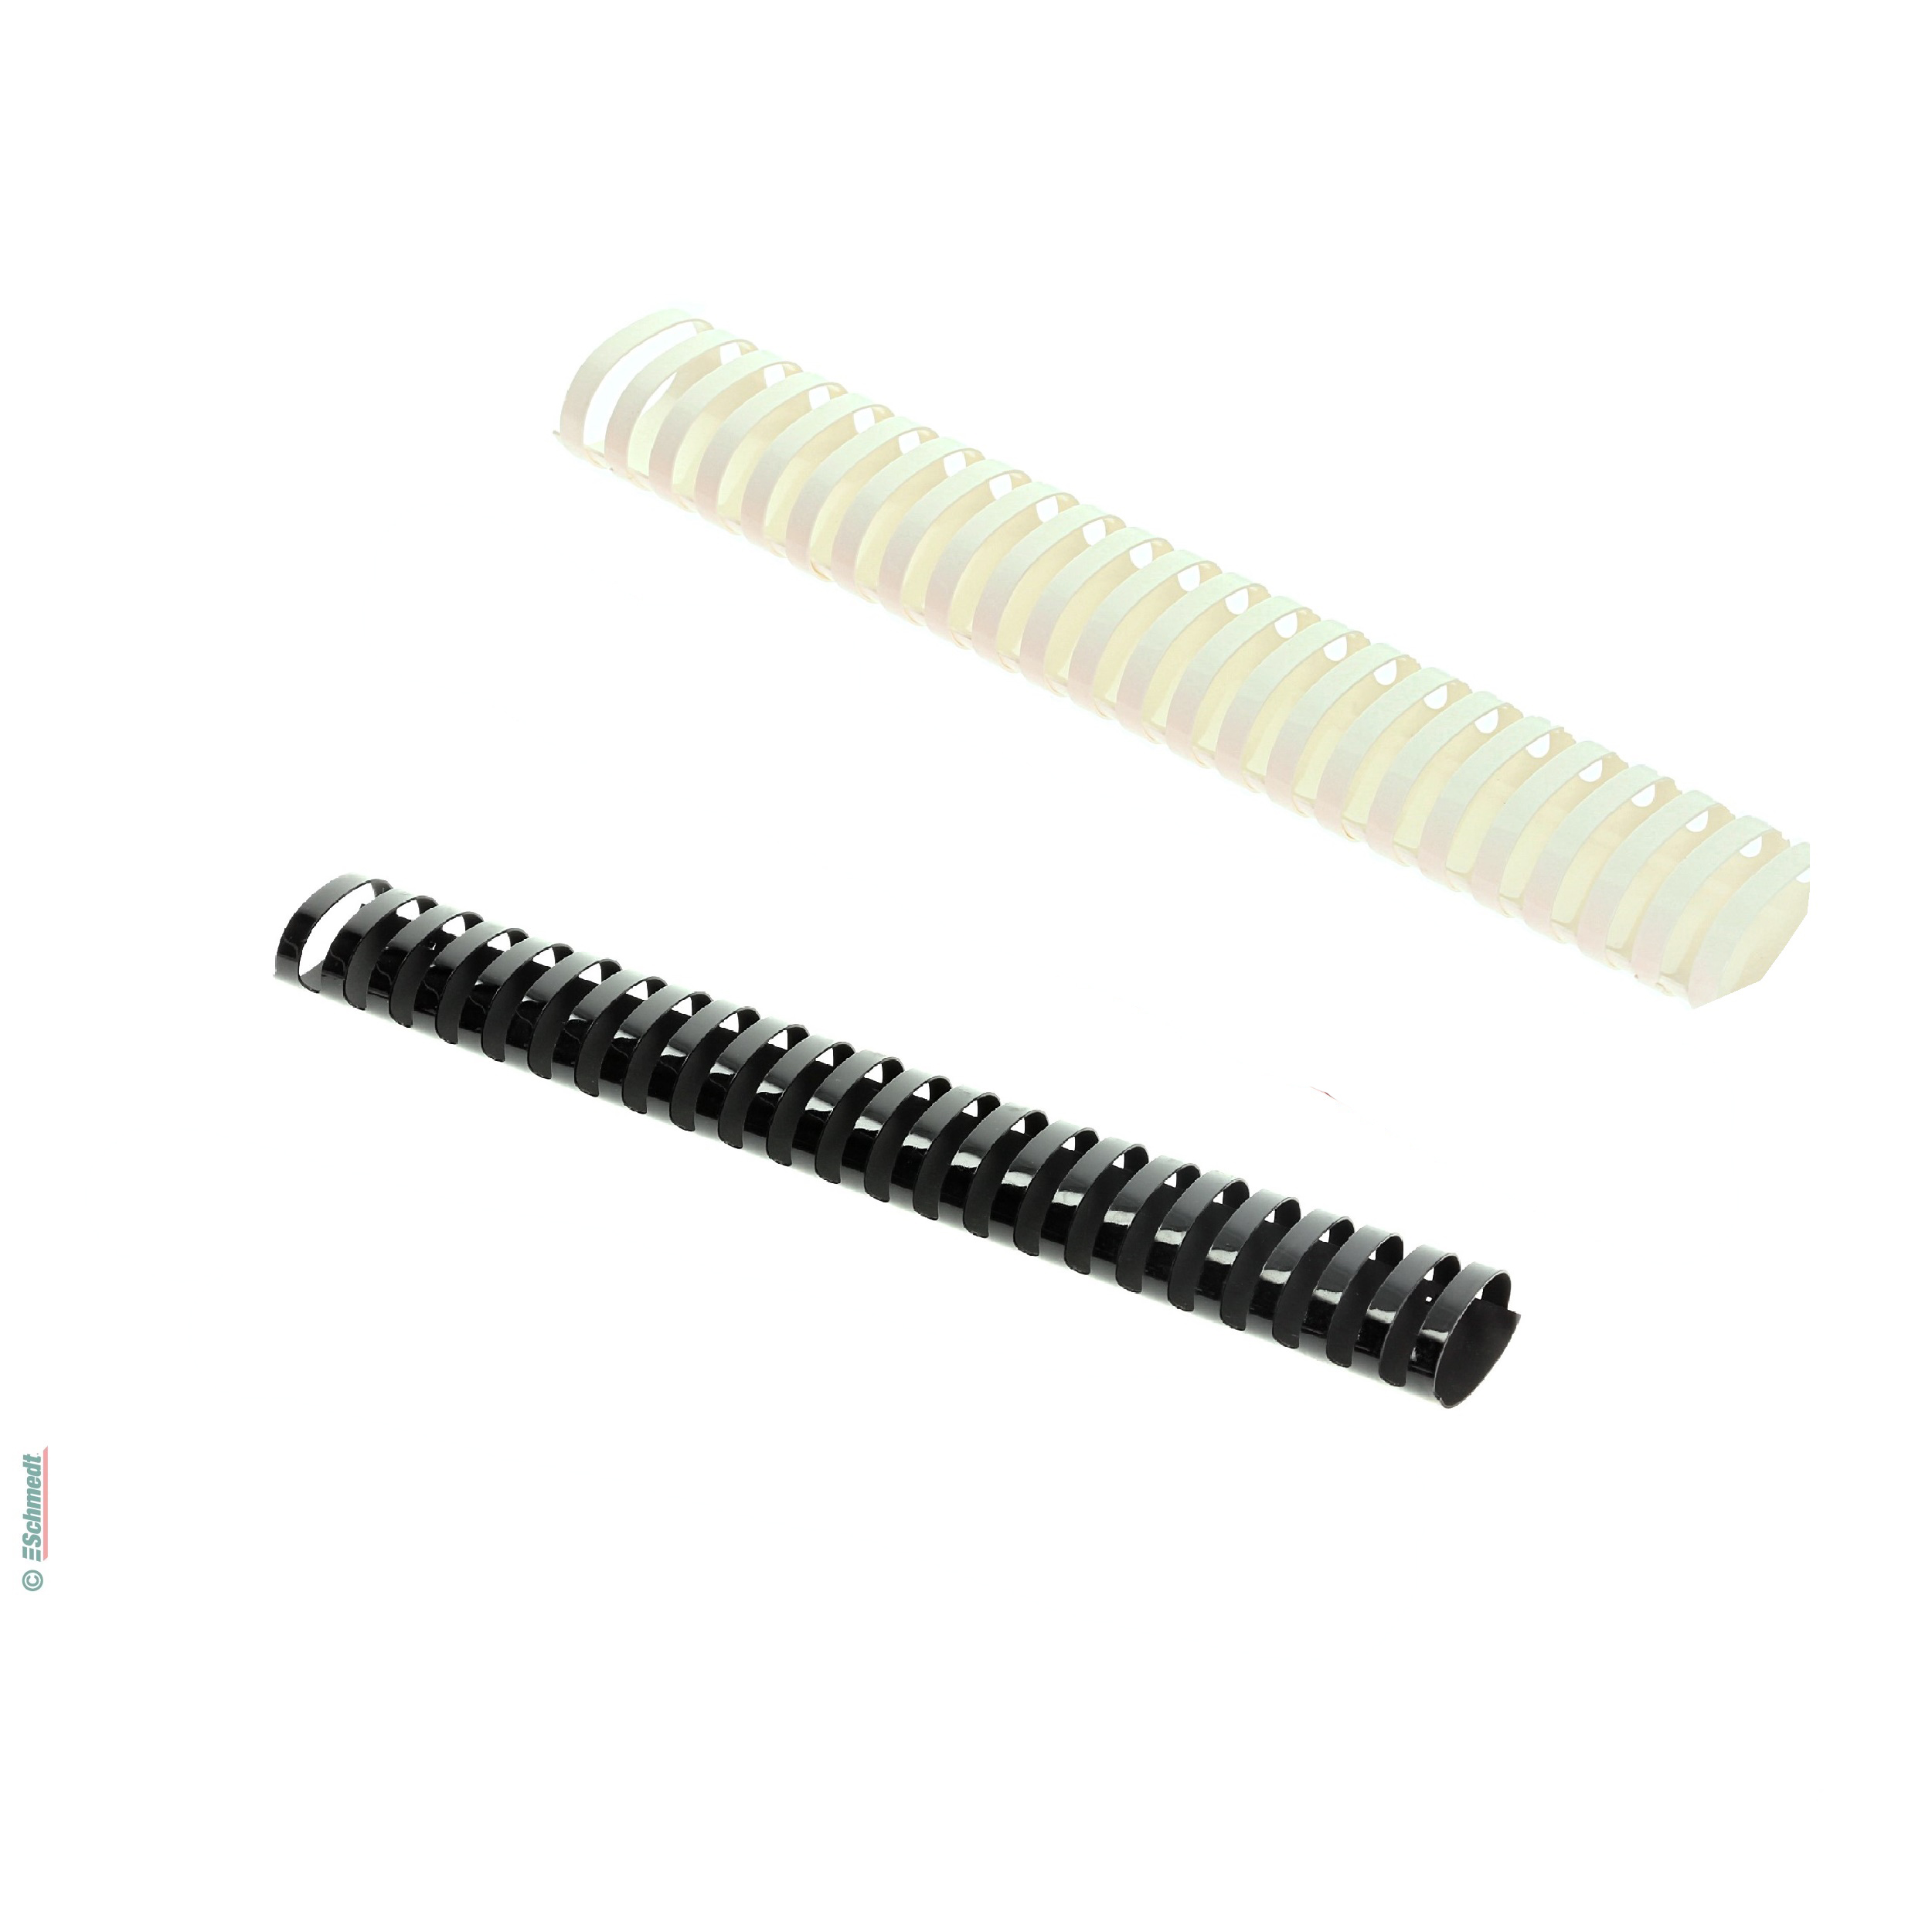 Plastikbinderücken - oval - US-Teilung - 21 Ringe - für DIN A4 - zur Verarbeitung in Plastikbindegeräten...